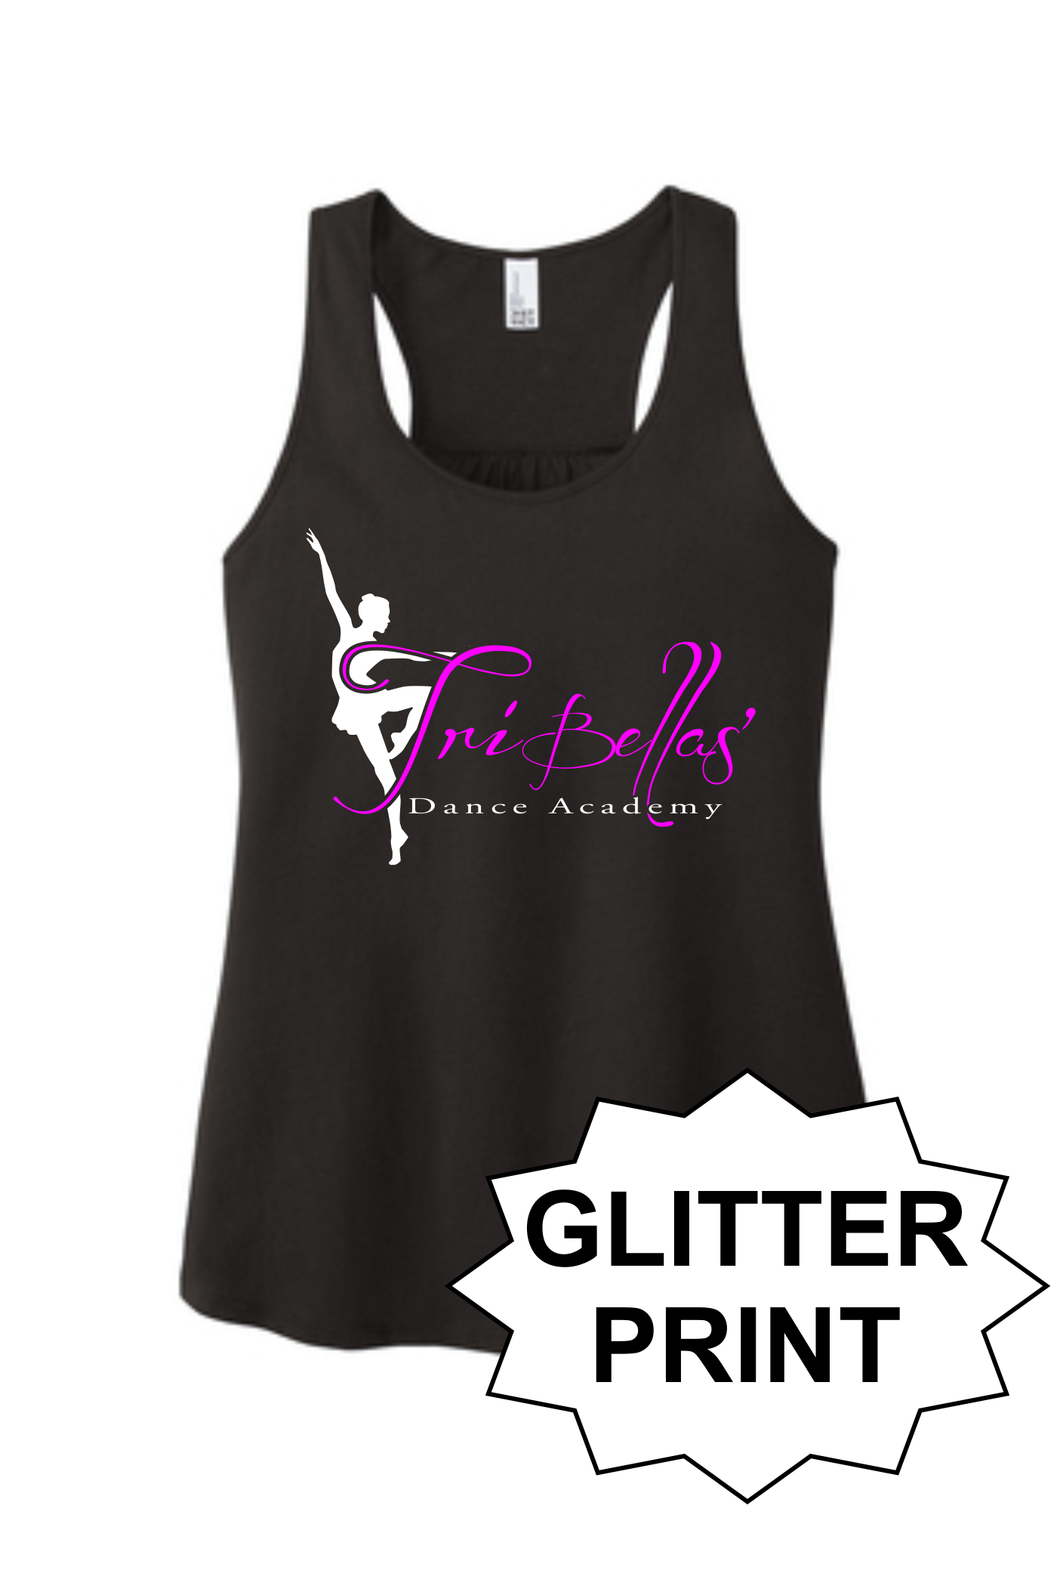 TriBellas - Glitter Print Ladies Tank